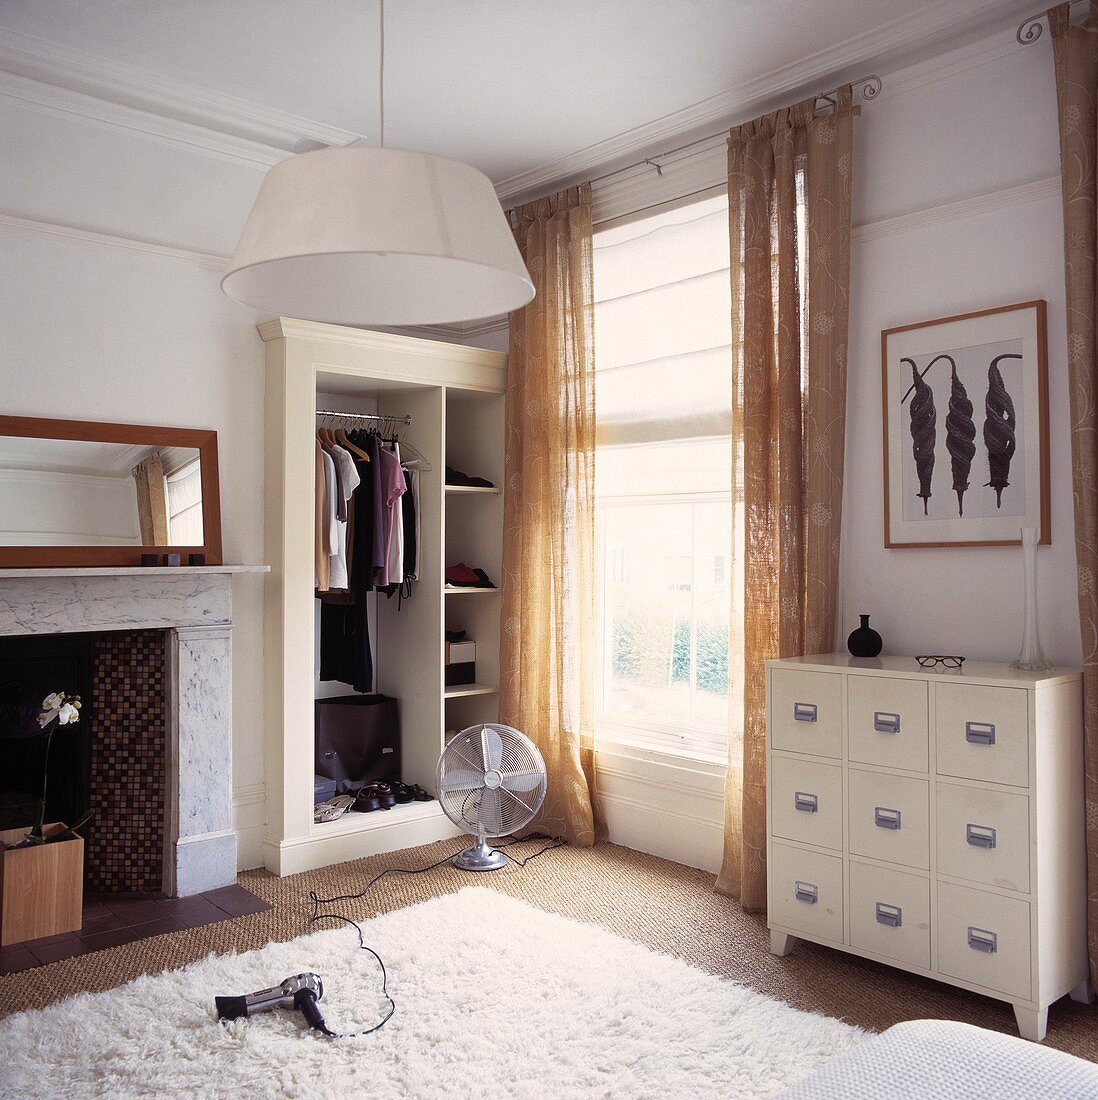 Haartrockner und Ventilator auf dem Boden in einem Schlafzimmer mit weisser Kommode und beigefarbenen Gardinen